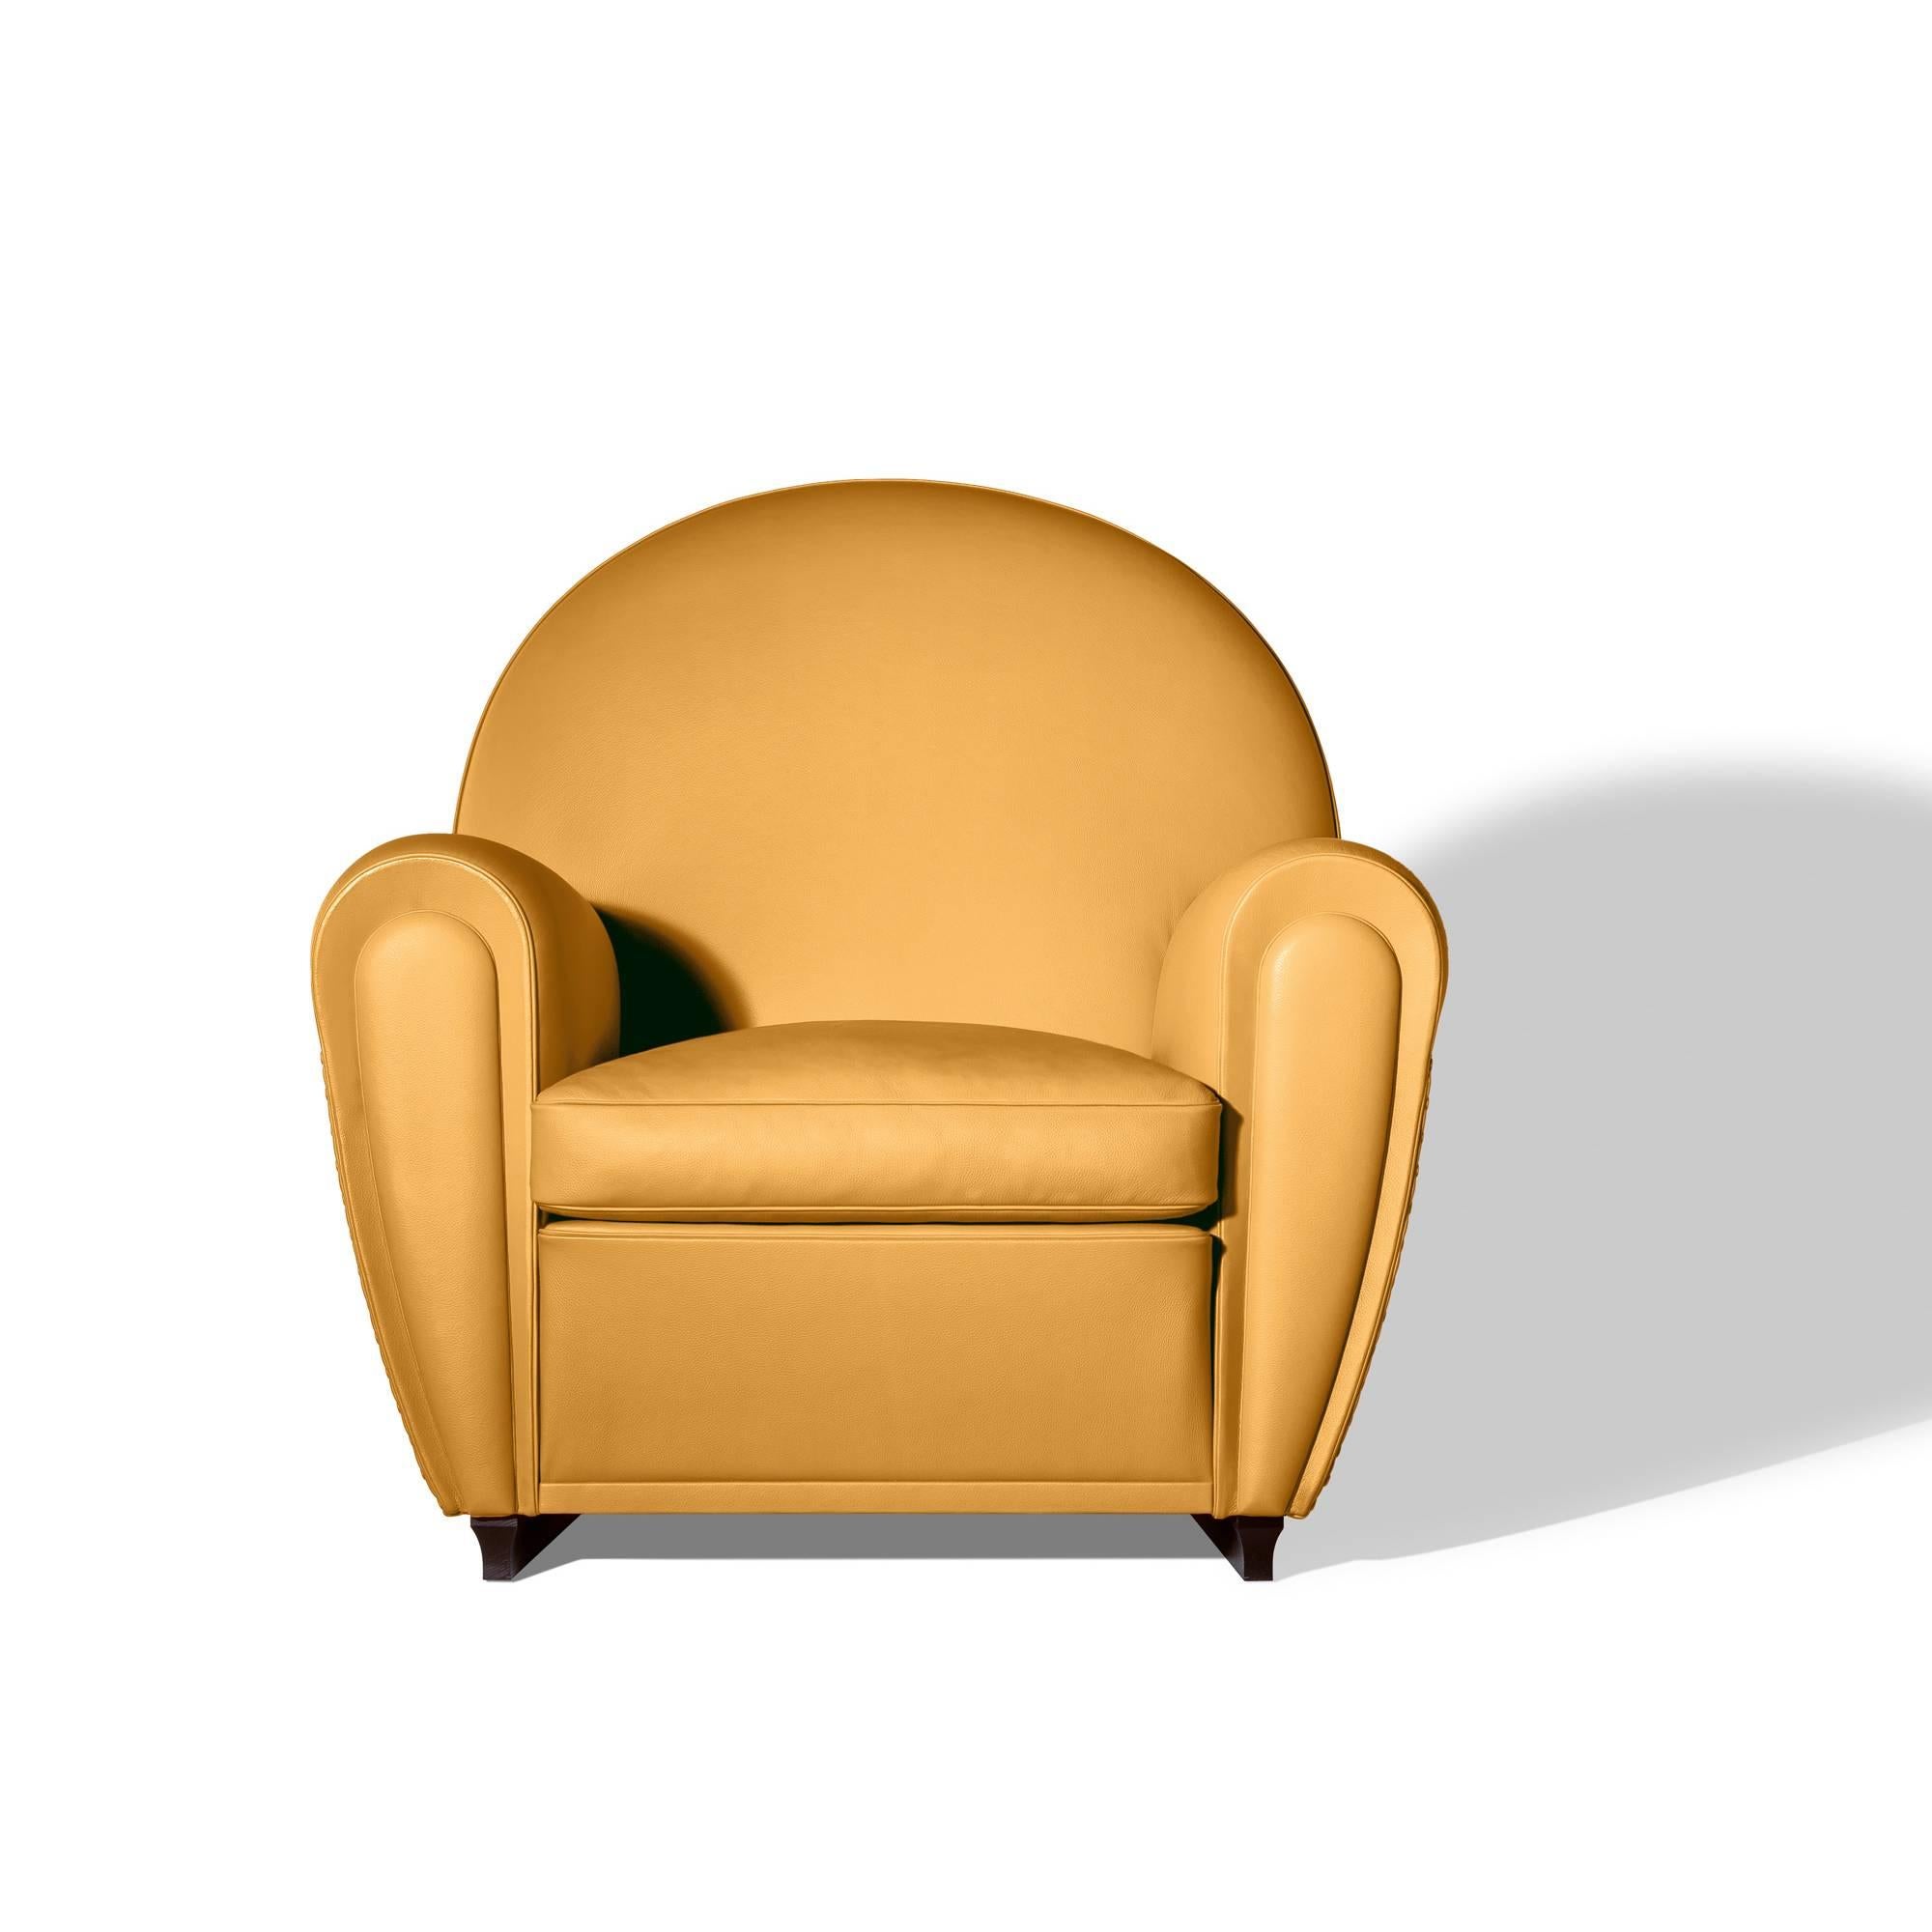 Le produit le plus emblématique de l'entreprise, le fauteuil Vanity Fair, incarne toutes les valeurs d'élégance intemporelle, de matériaux de qualité et de savoir-faire consommé qui ont fait la renommée de la marque Poltrona Frau au fil des ans.